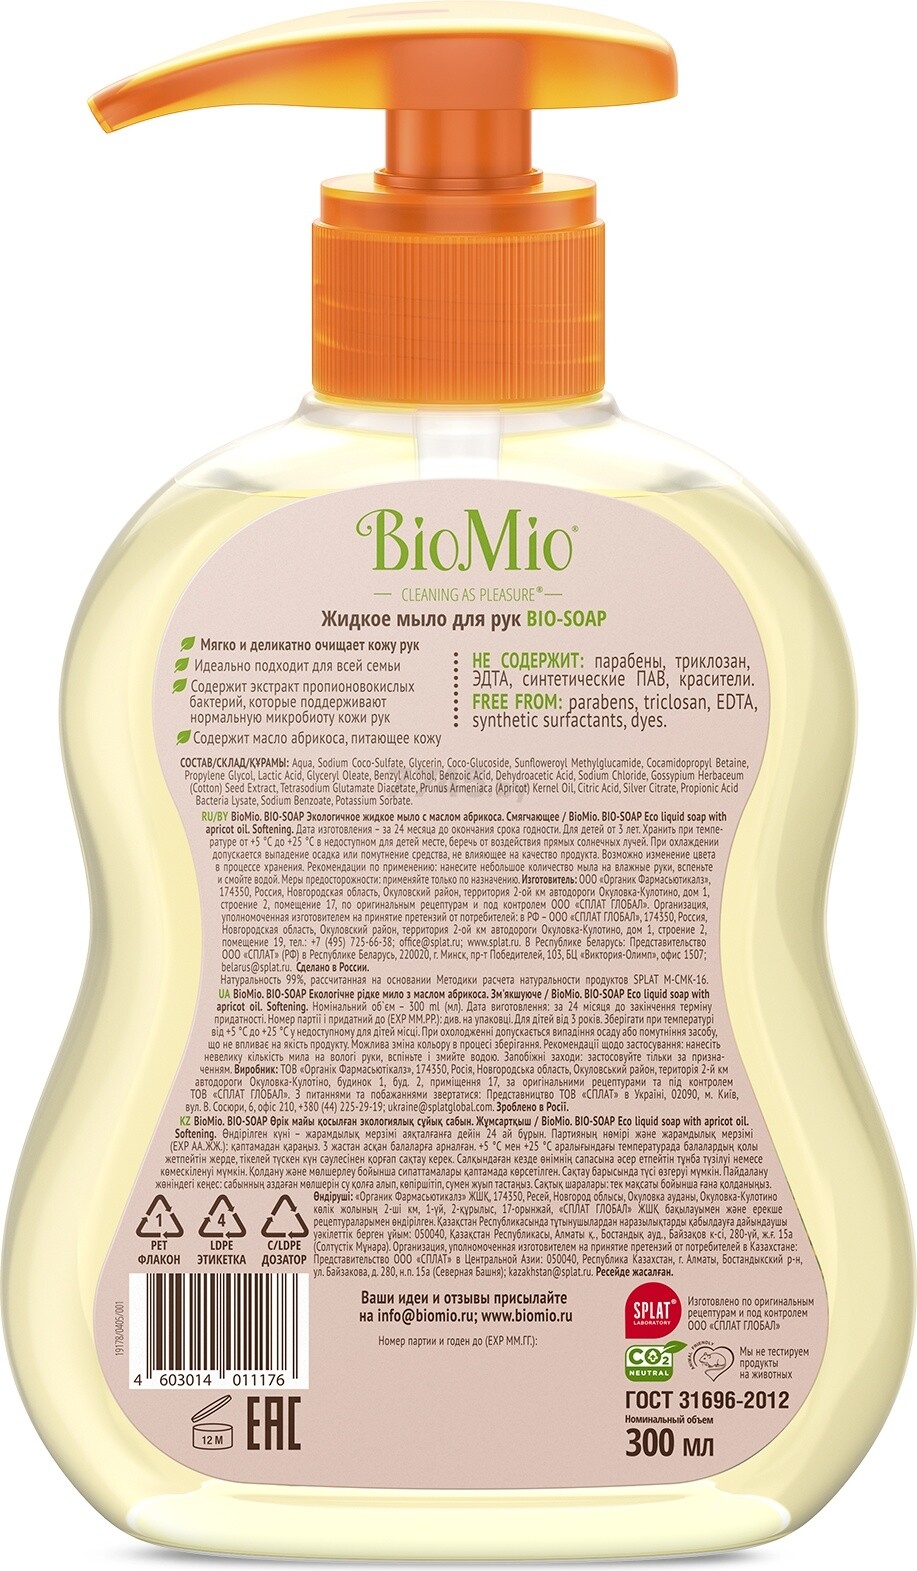 Мыло жидкое BIOMIO Bio-Soap С маслом абрикоса 300 мл (4603014011176) - Фото 2